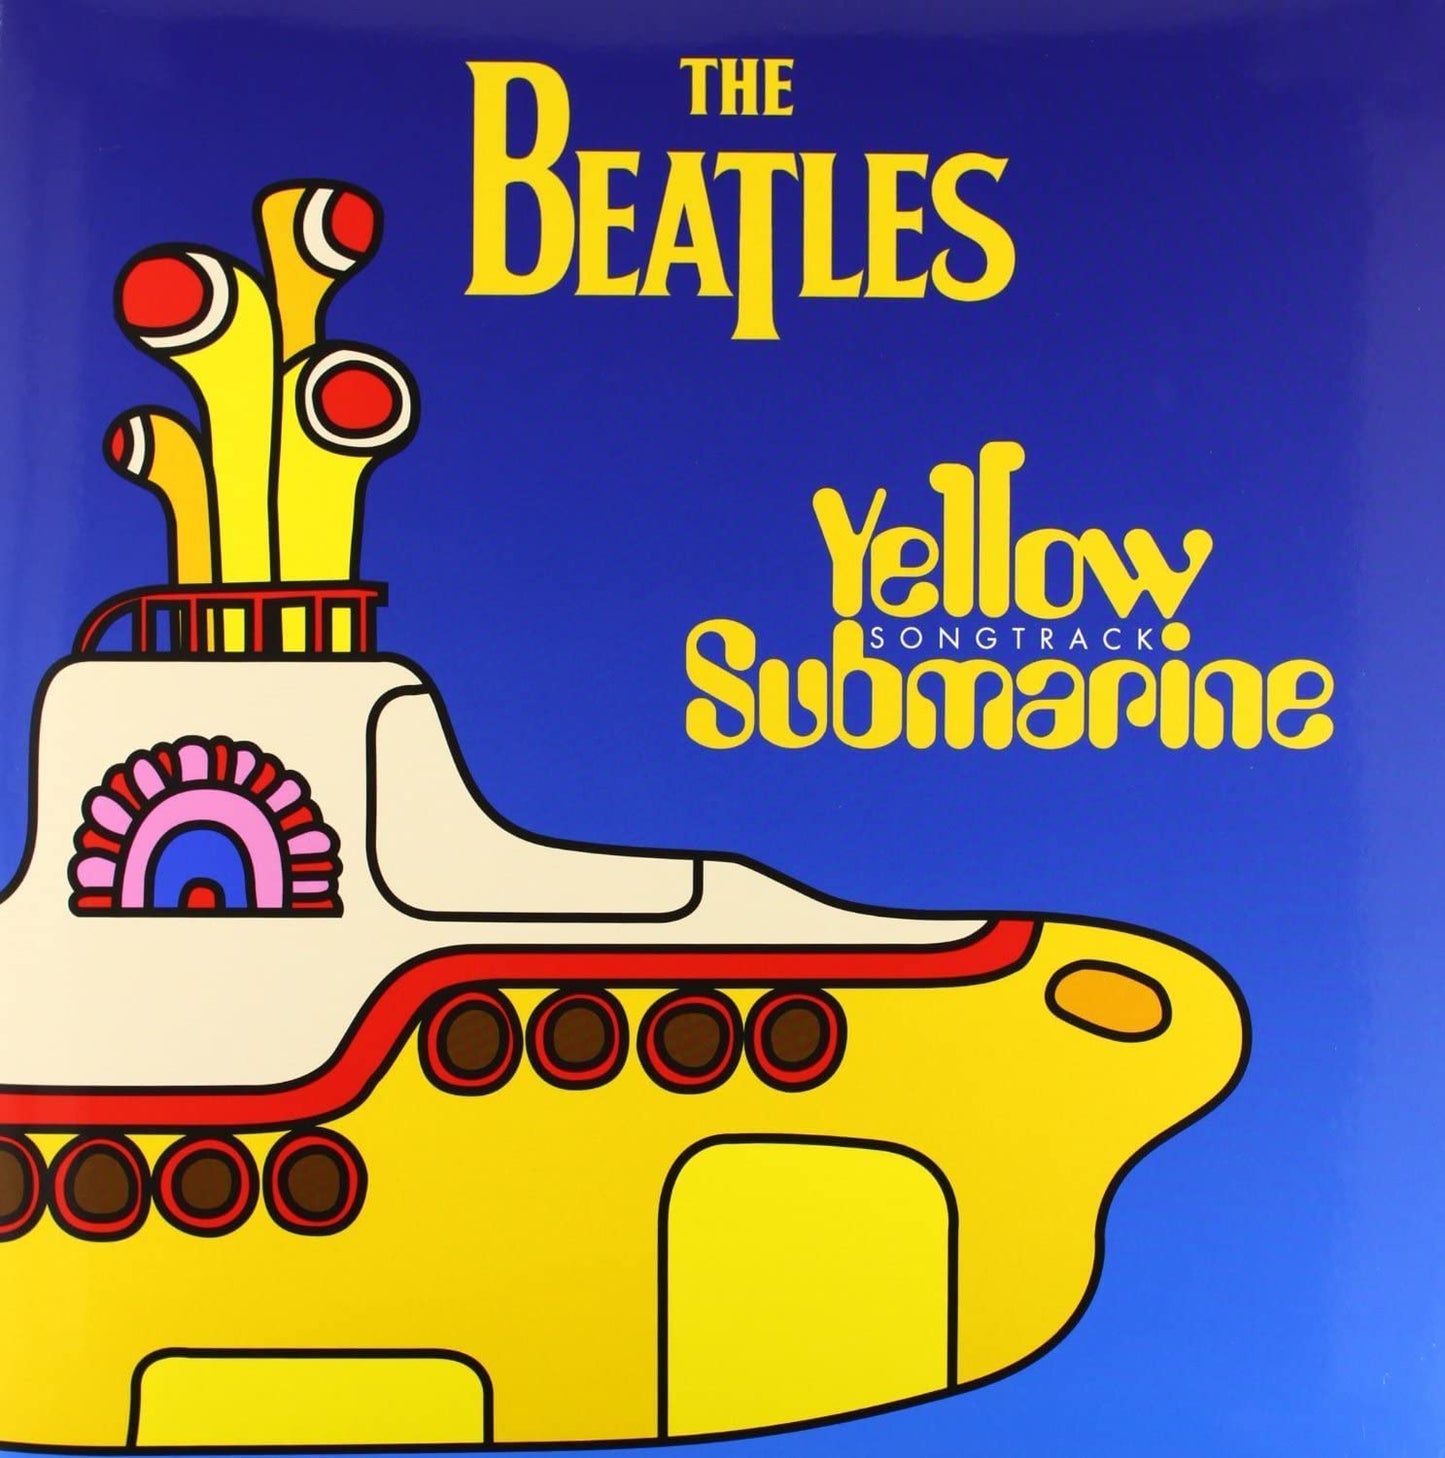 Beatles Yellow Submarine Soundtrack